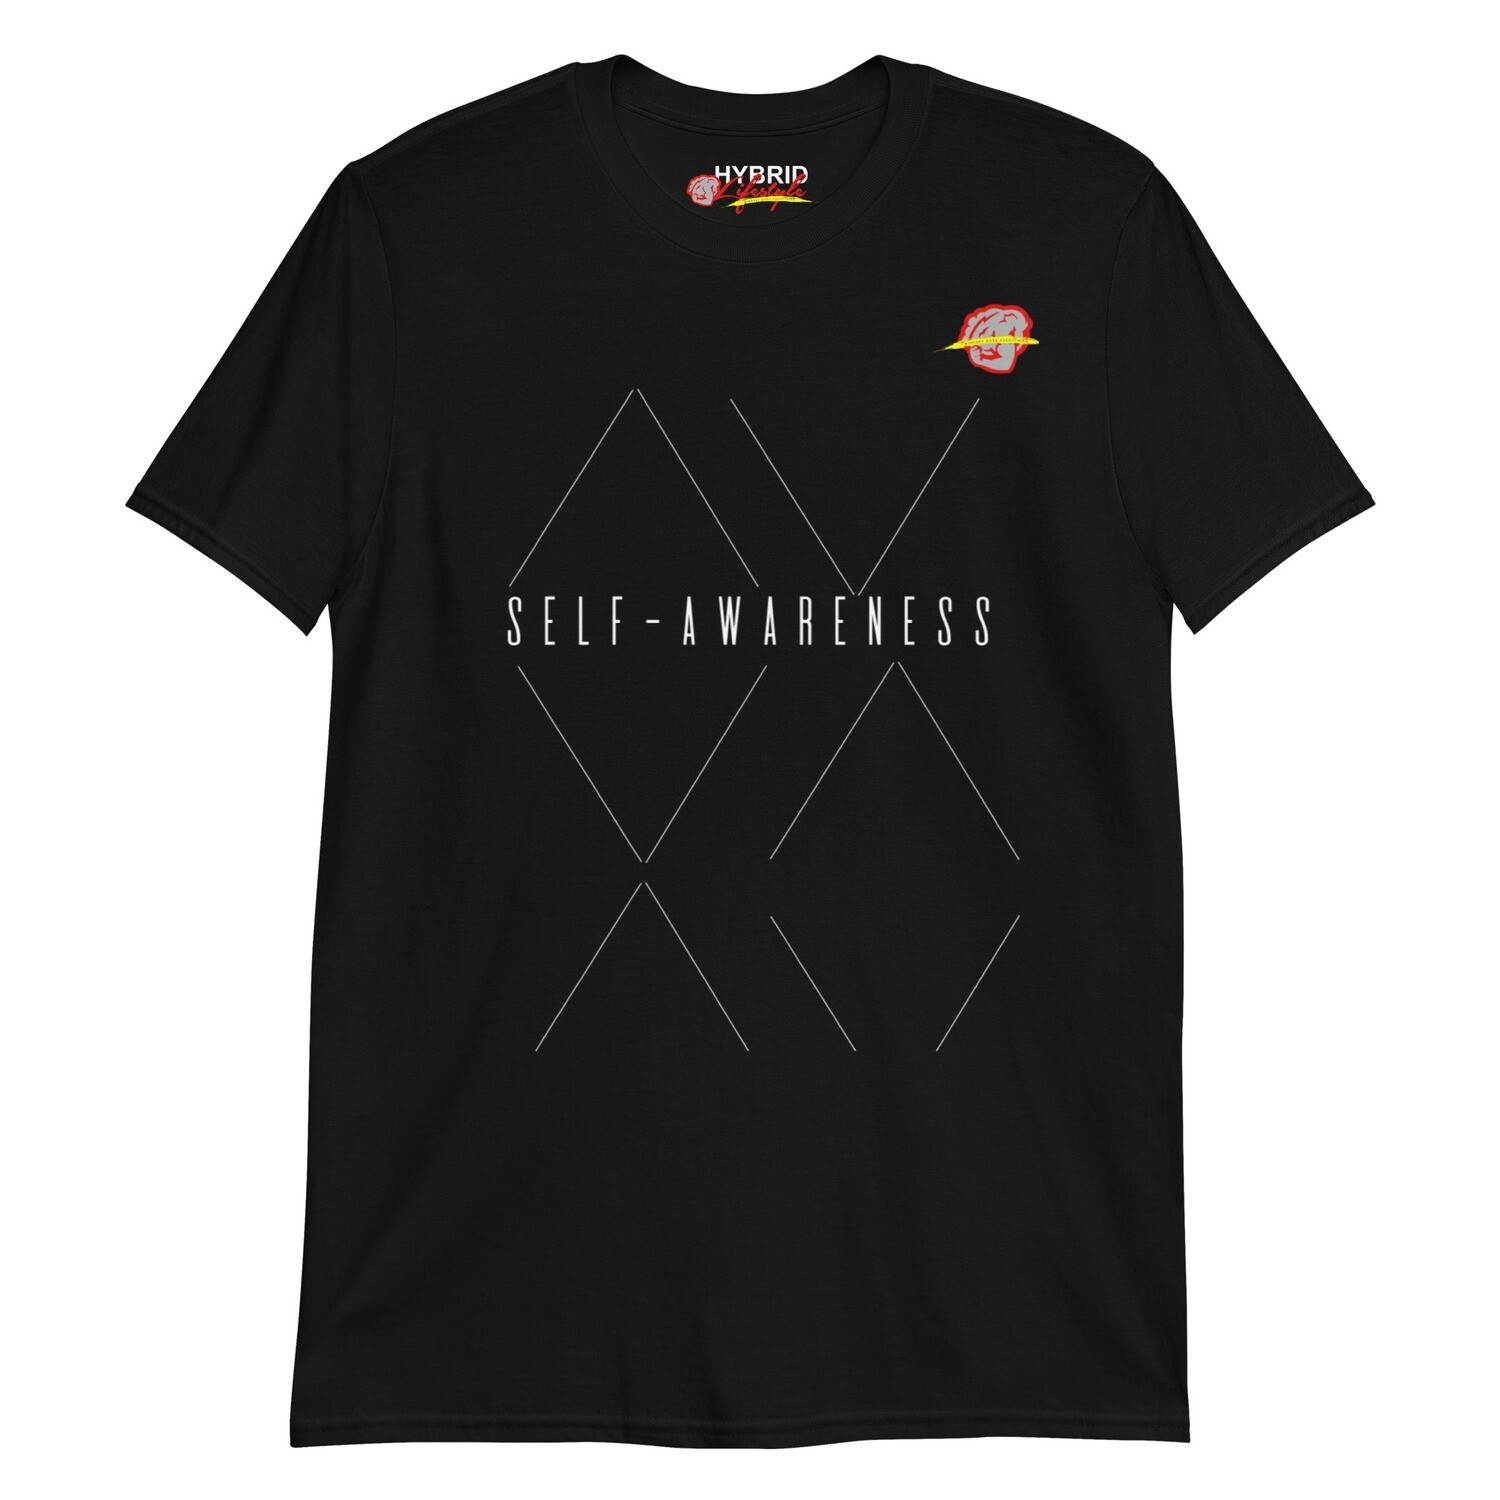 Self-Awareness T-Shirt